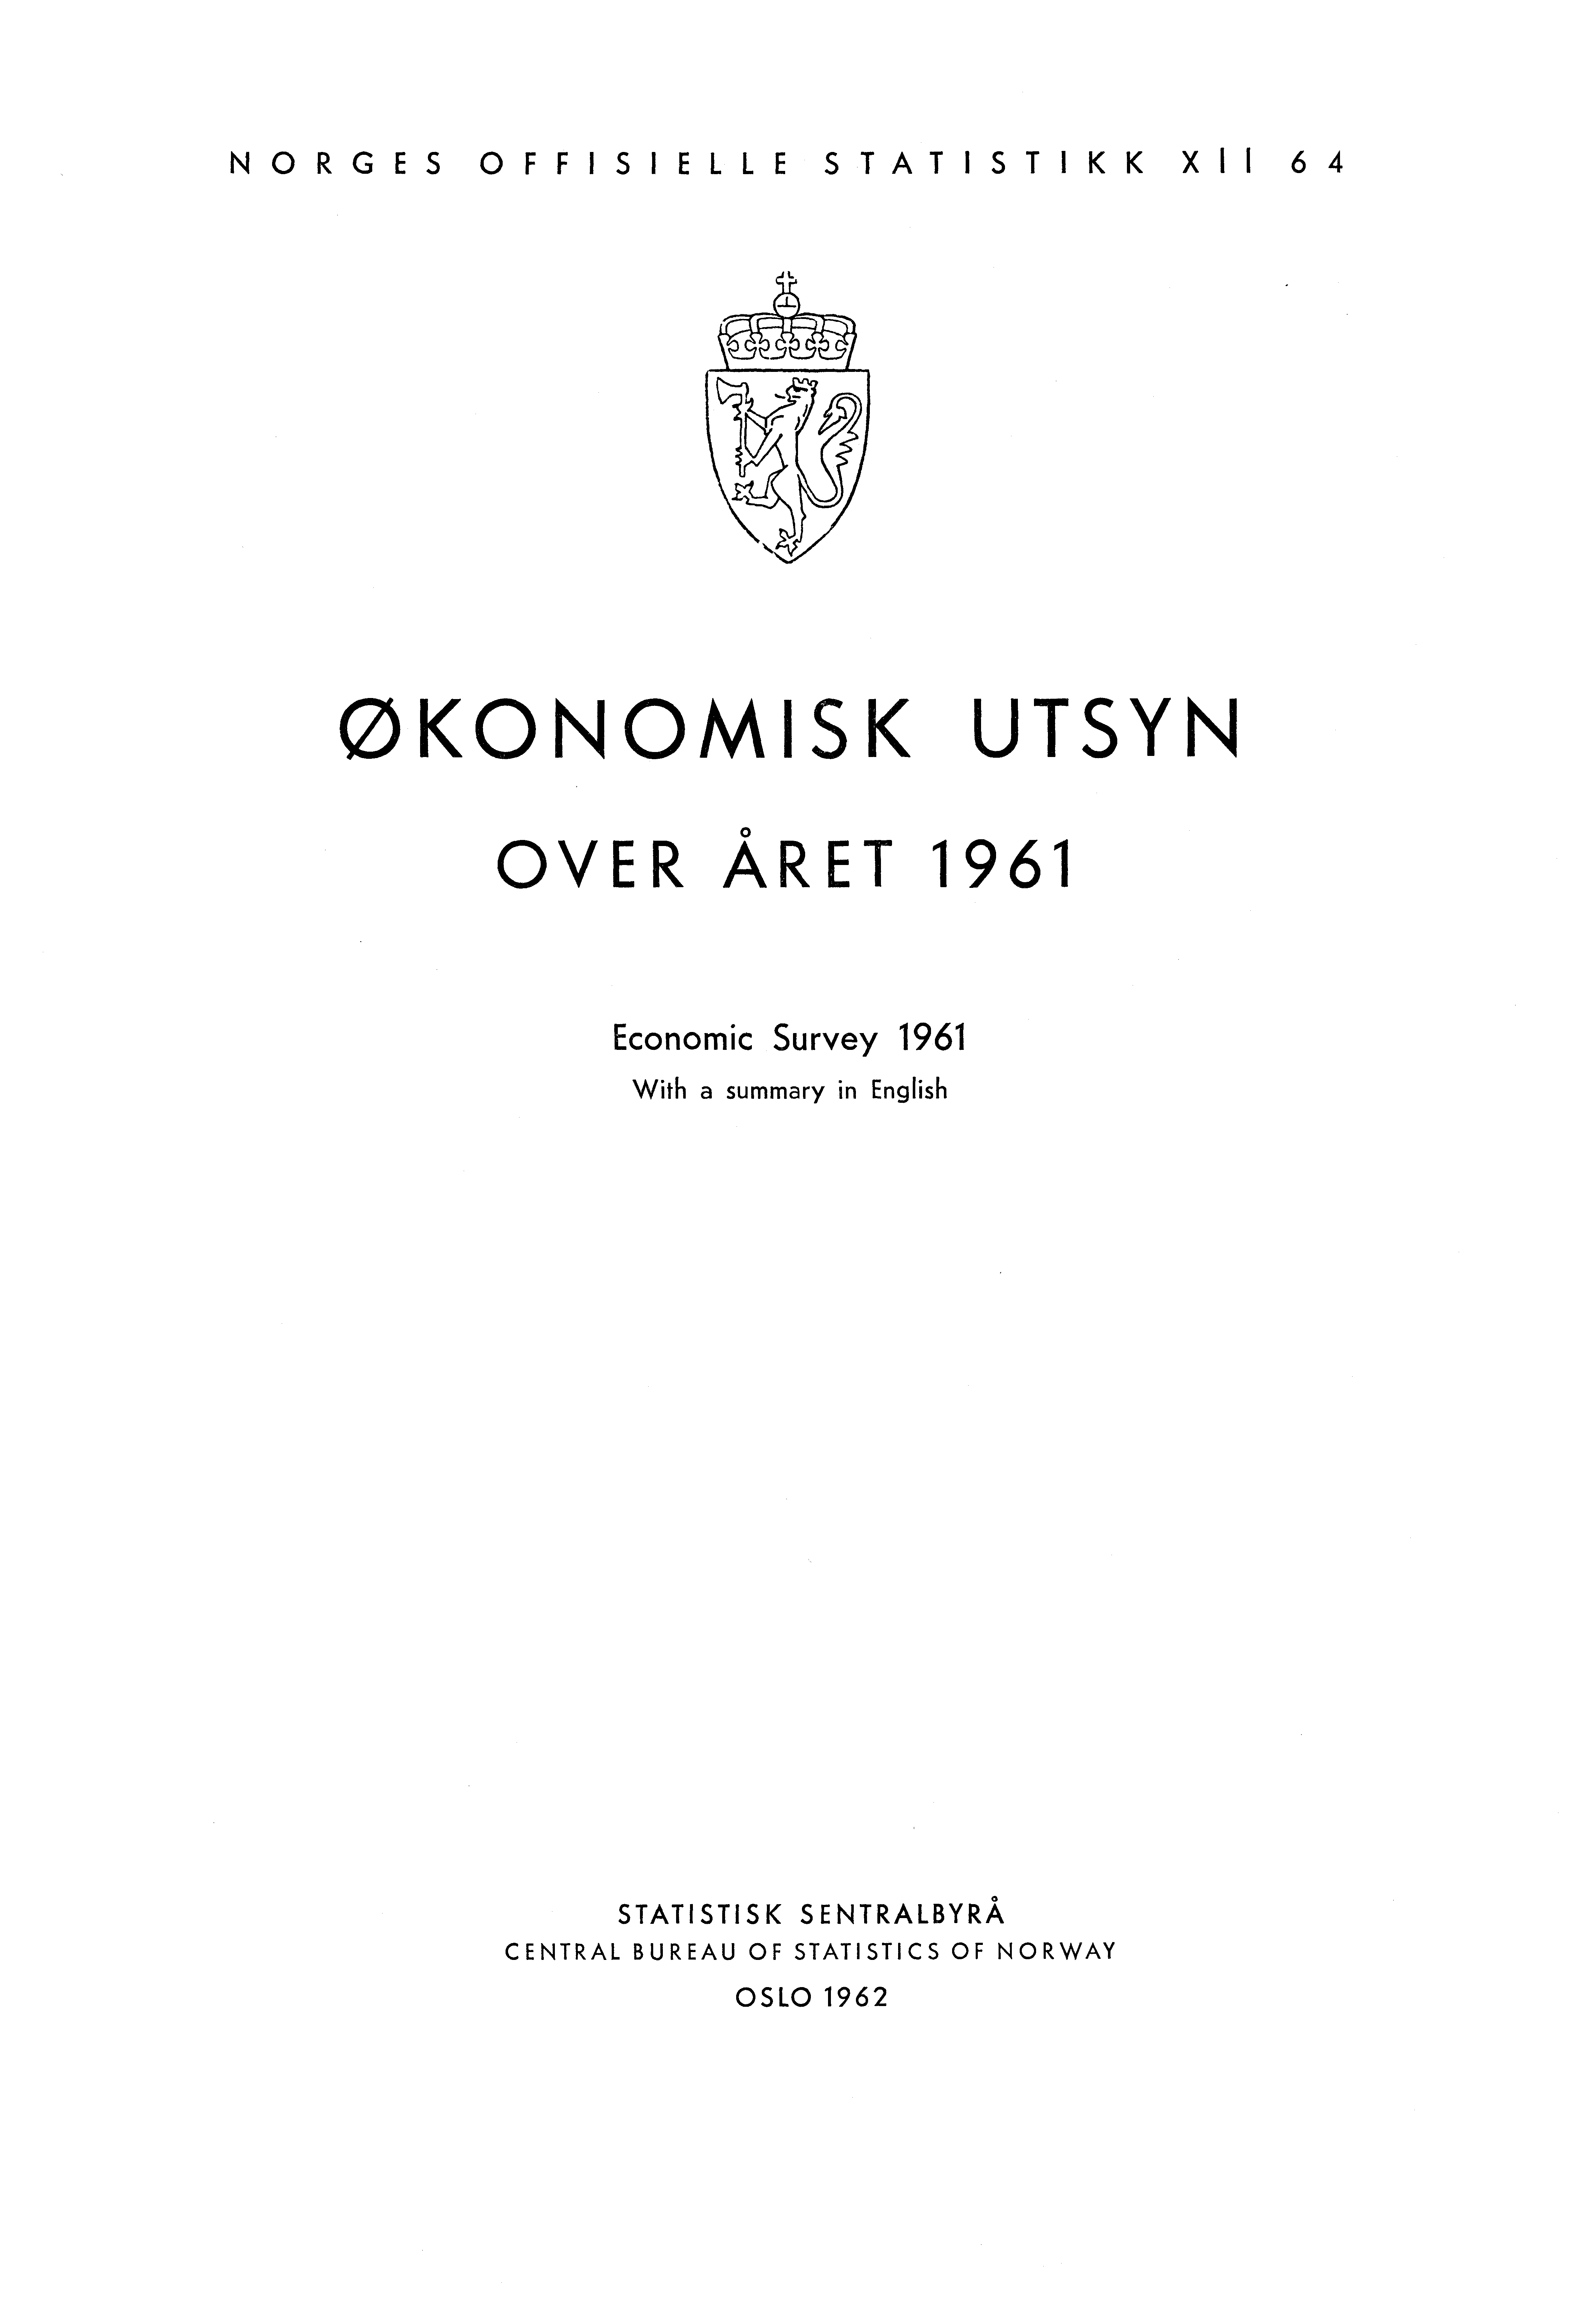 NORGES OFFISIELLE STATISTIKK XII 64 ØKONOMISK UTSYN OVER ÅRET 1961 Economic Survey 1961 With